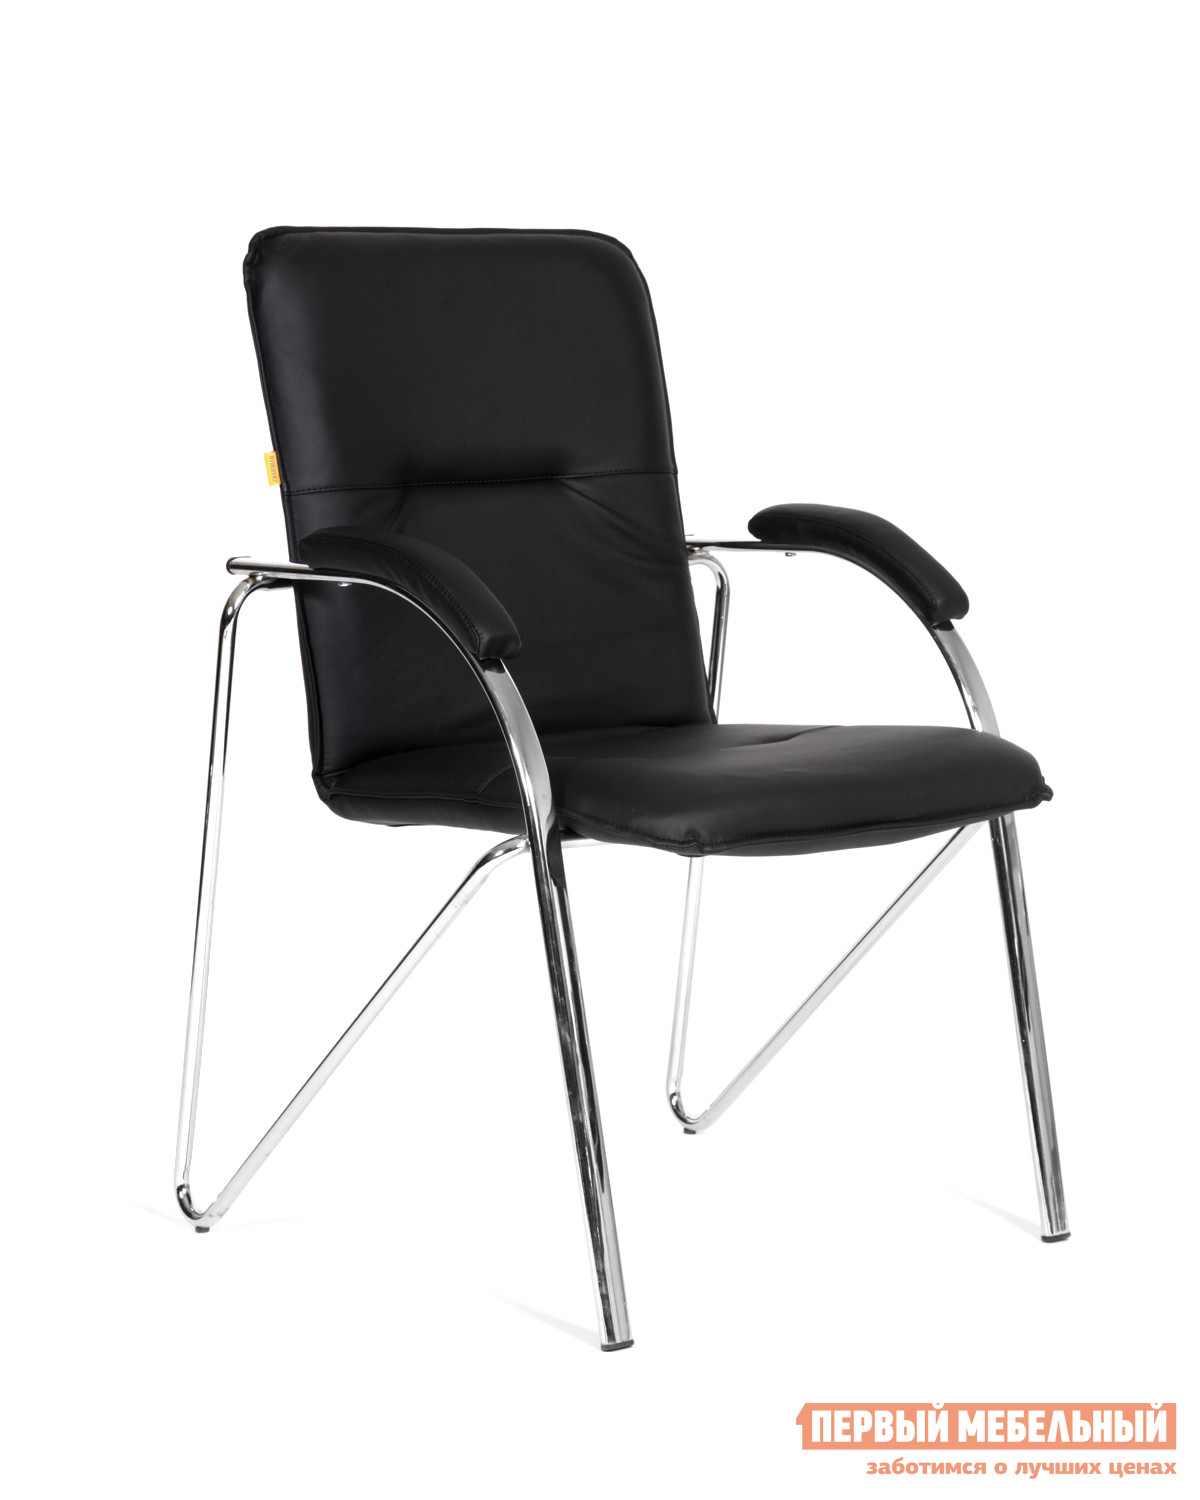 Фото Офисный стул Chairman CH 850 Terra-118 (эко-кожа черная). Купить с доставкой